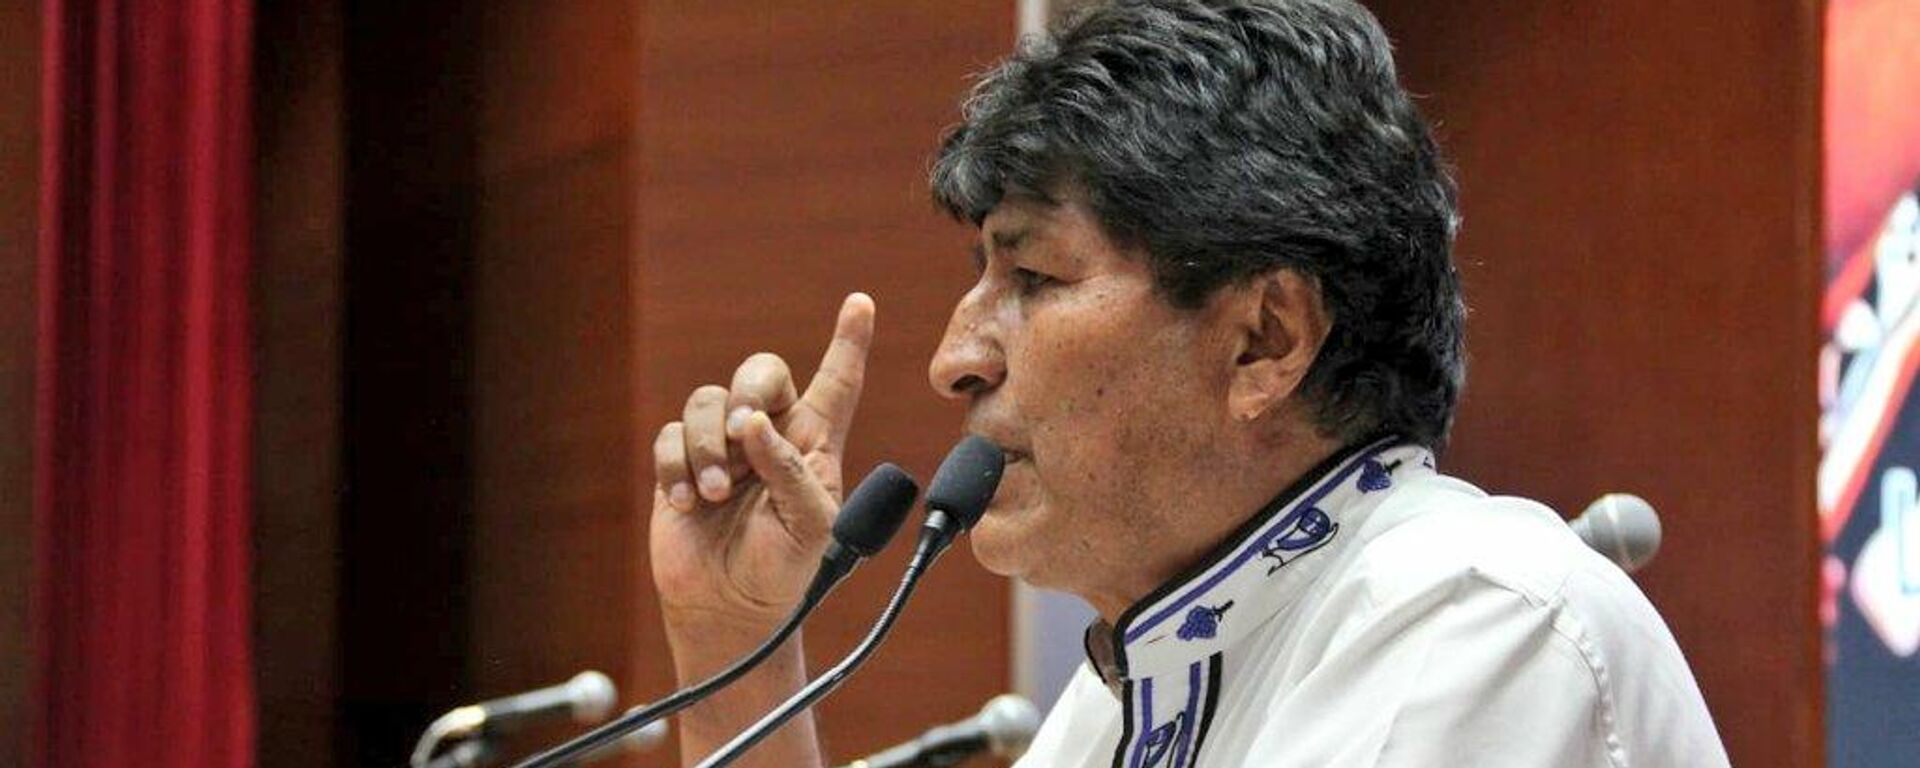 Evo Morales, expresidente de Bolivia - Sputnik Mundo, 1920, 20.10.2021